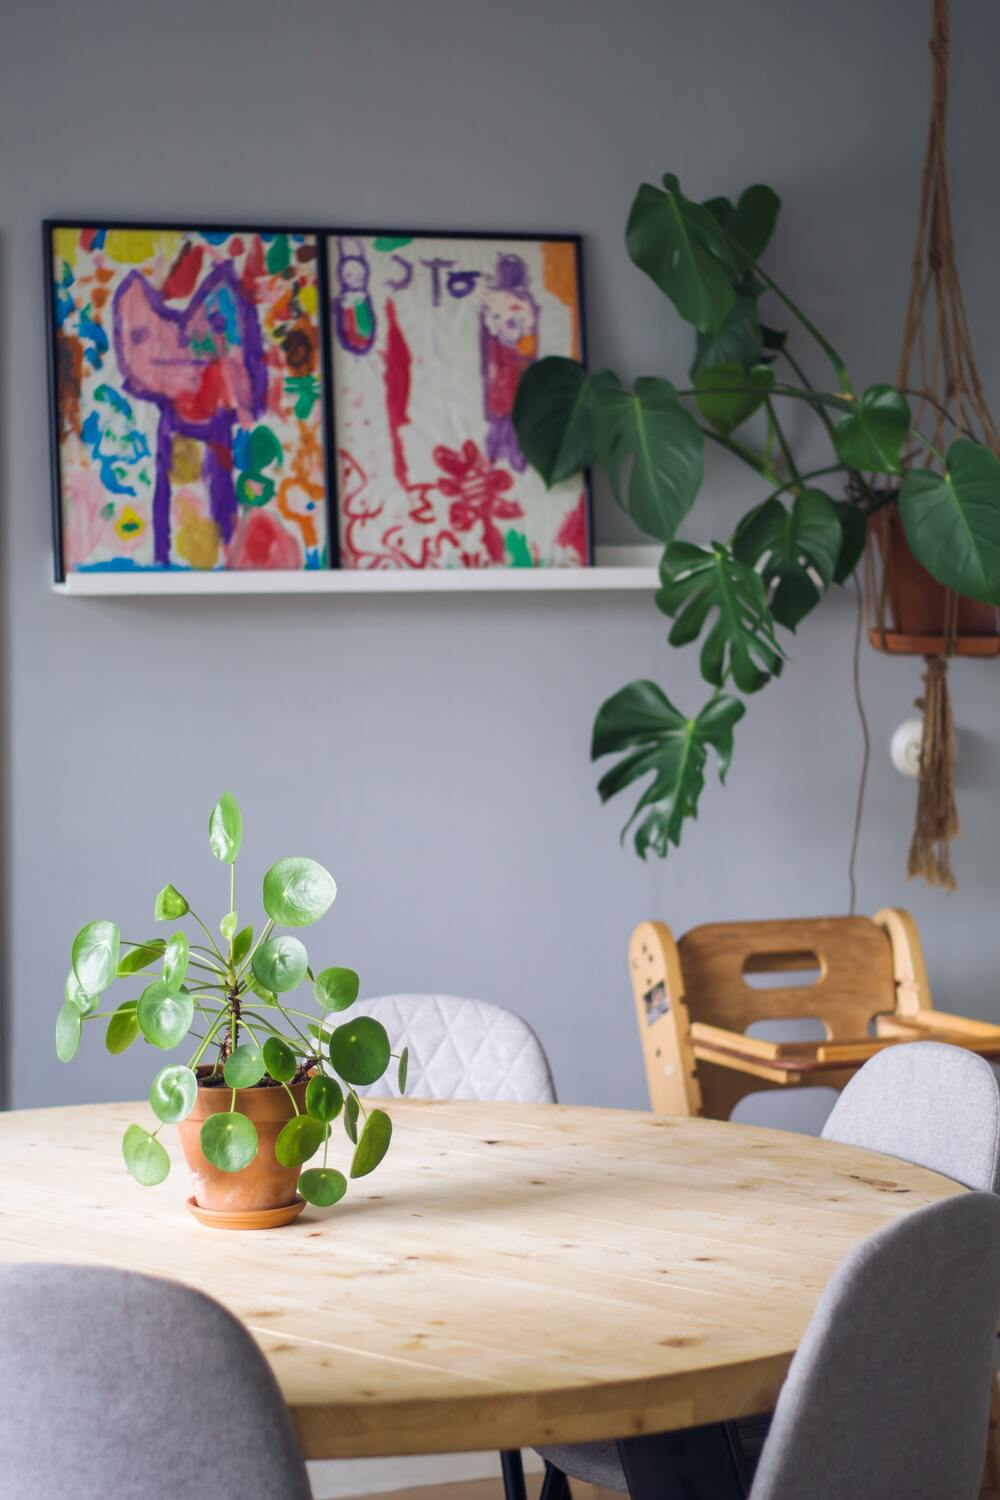 Ufopflanze auf rundem Holztisch mit grauen Stühlen vor einer grauen Wand, dahinter eine grosse Monstera im Makramee